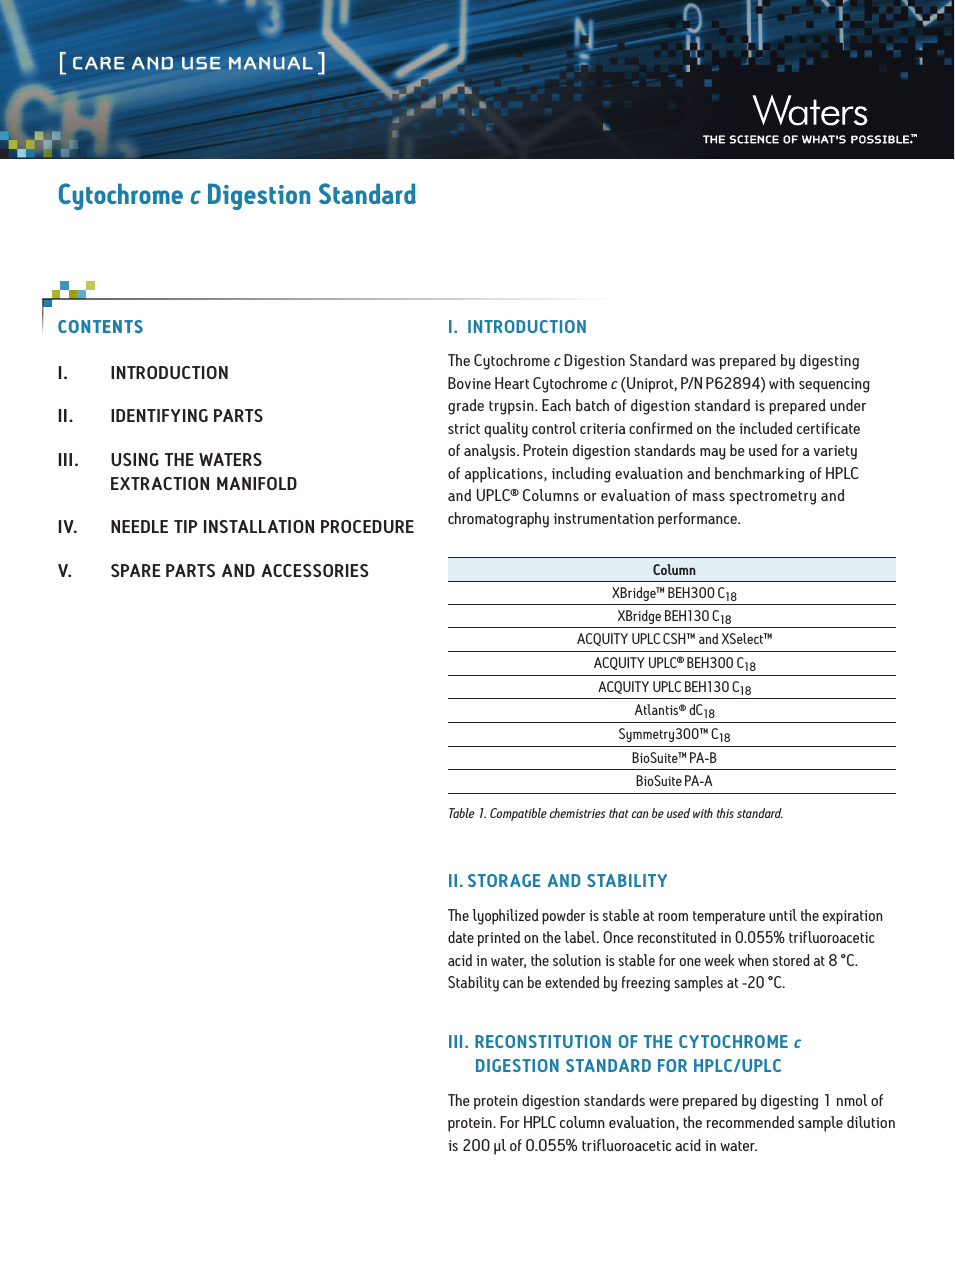 Cytochrome c Digestion Standard